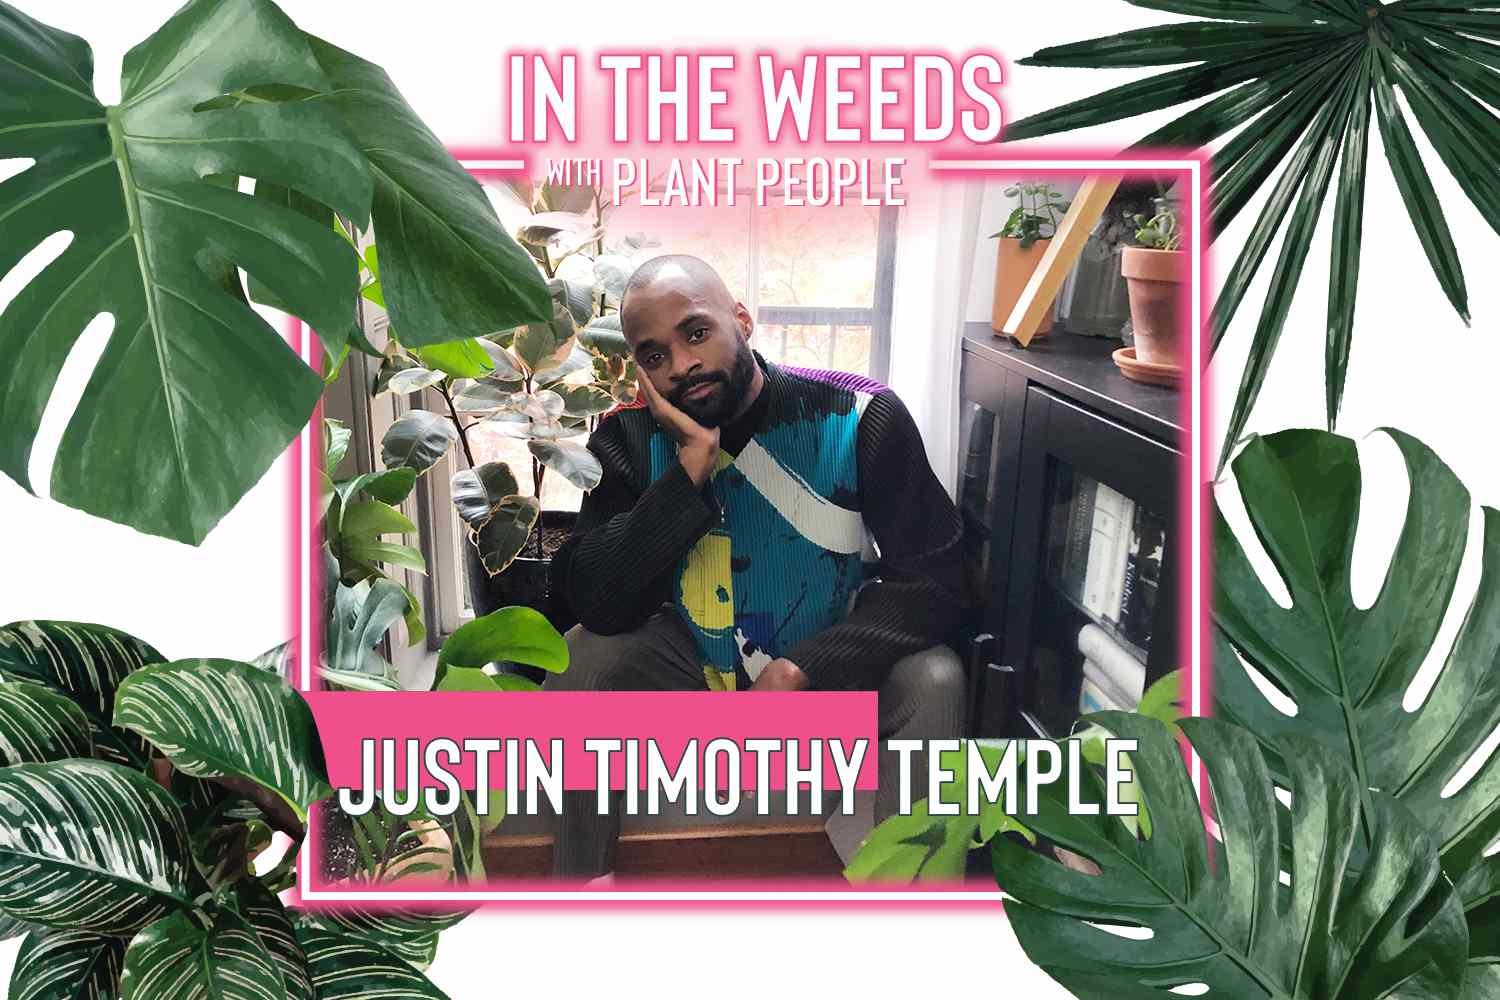 En la maleza con gente de plantas, Justin Timothy Temple episodio 4